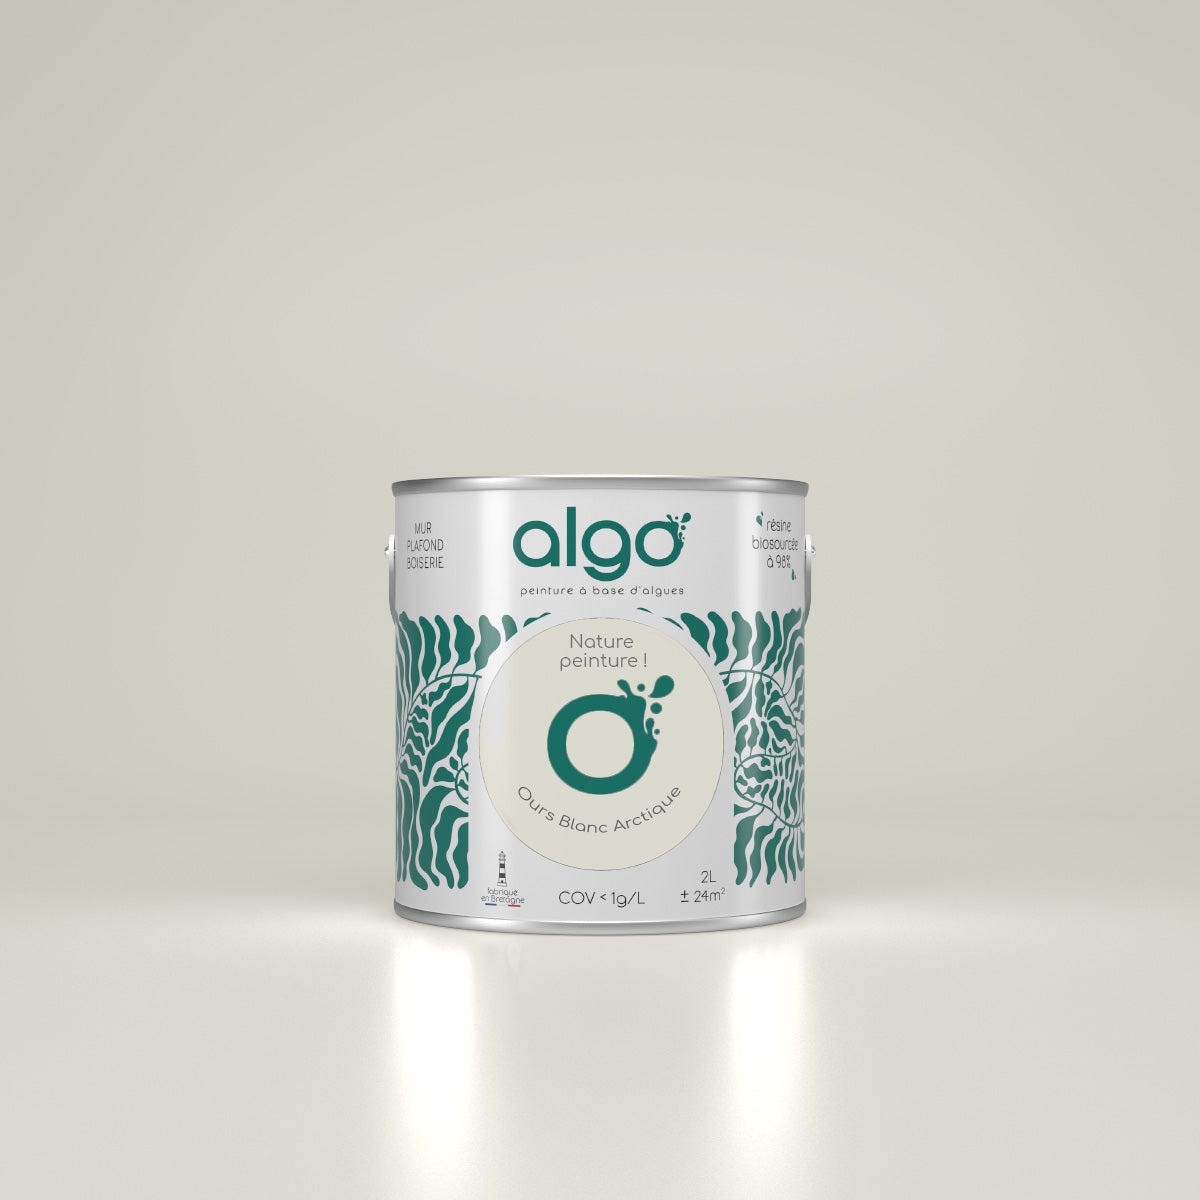 Peinture Algo - Ours Blanc Arctique - Mat - 5L 0